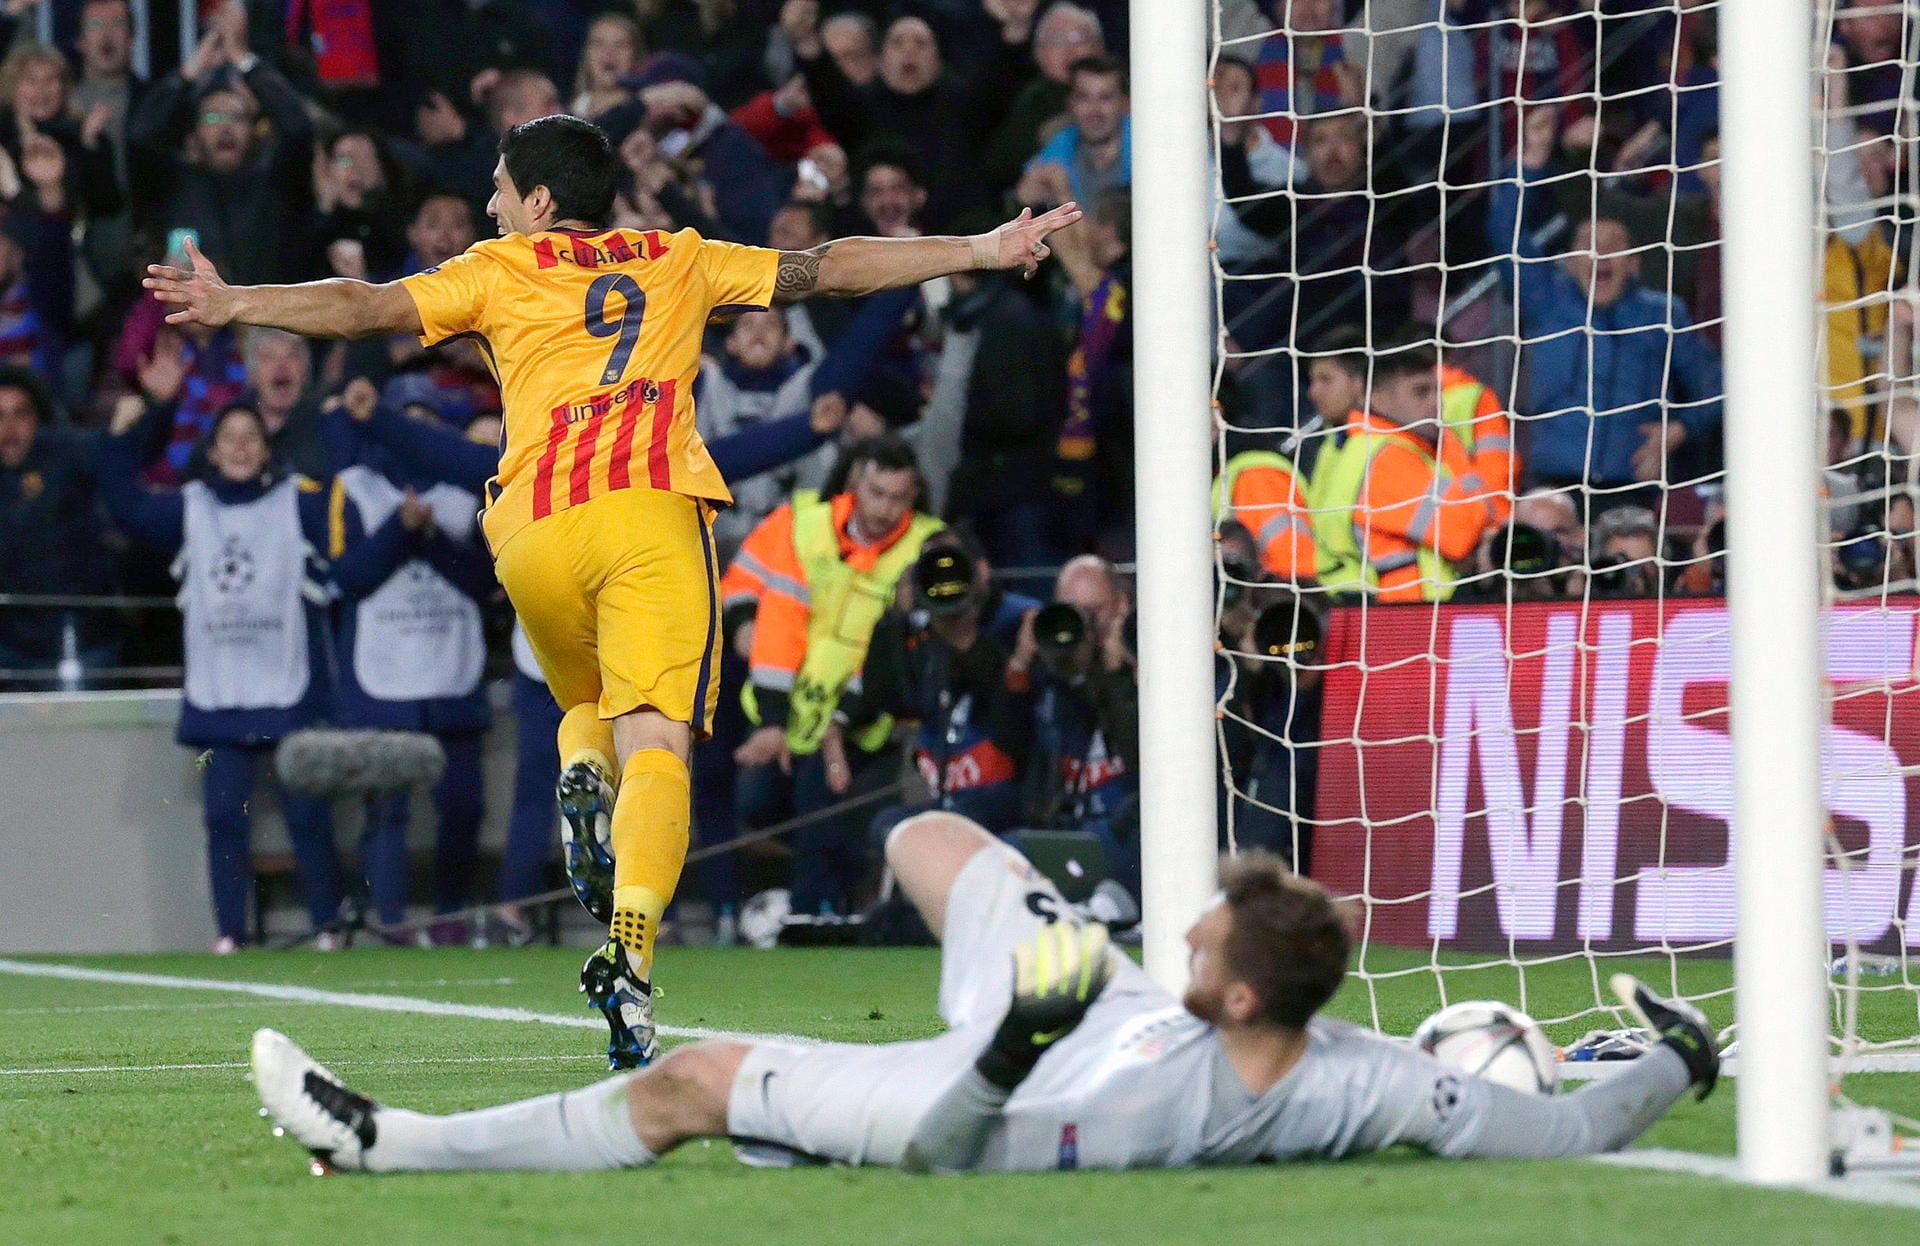 In Überzahl hat Barca dann wesentlich leichteres Spiel. Zwei Treffer von Luis Suarez sorgen für einen knappen Hinspiel-Erfolg für die Katalanen.